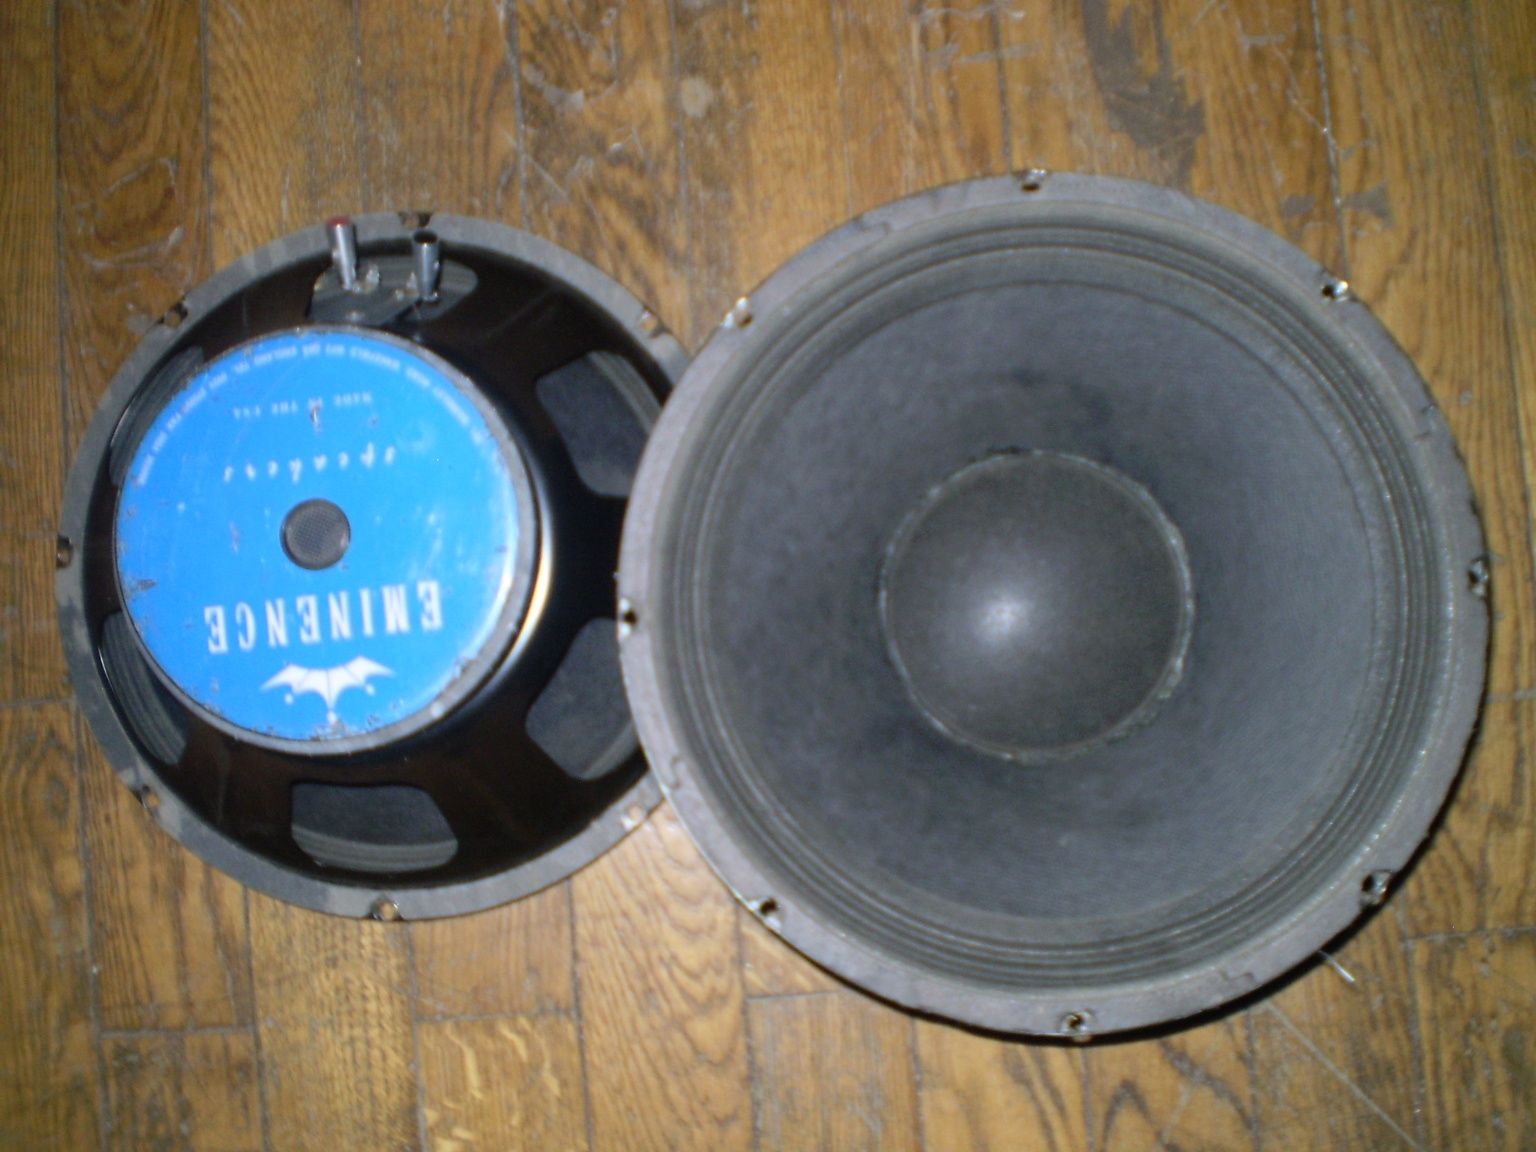 Динамик P.Audio HP 18W (пара)